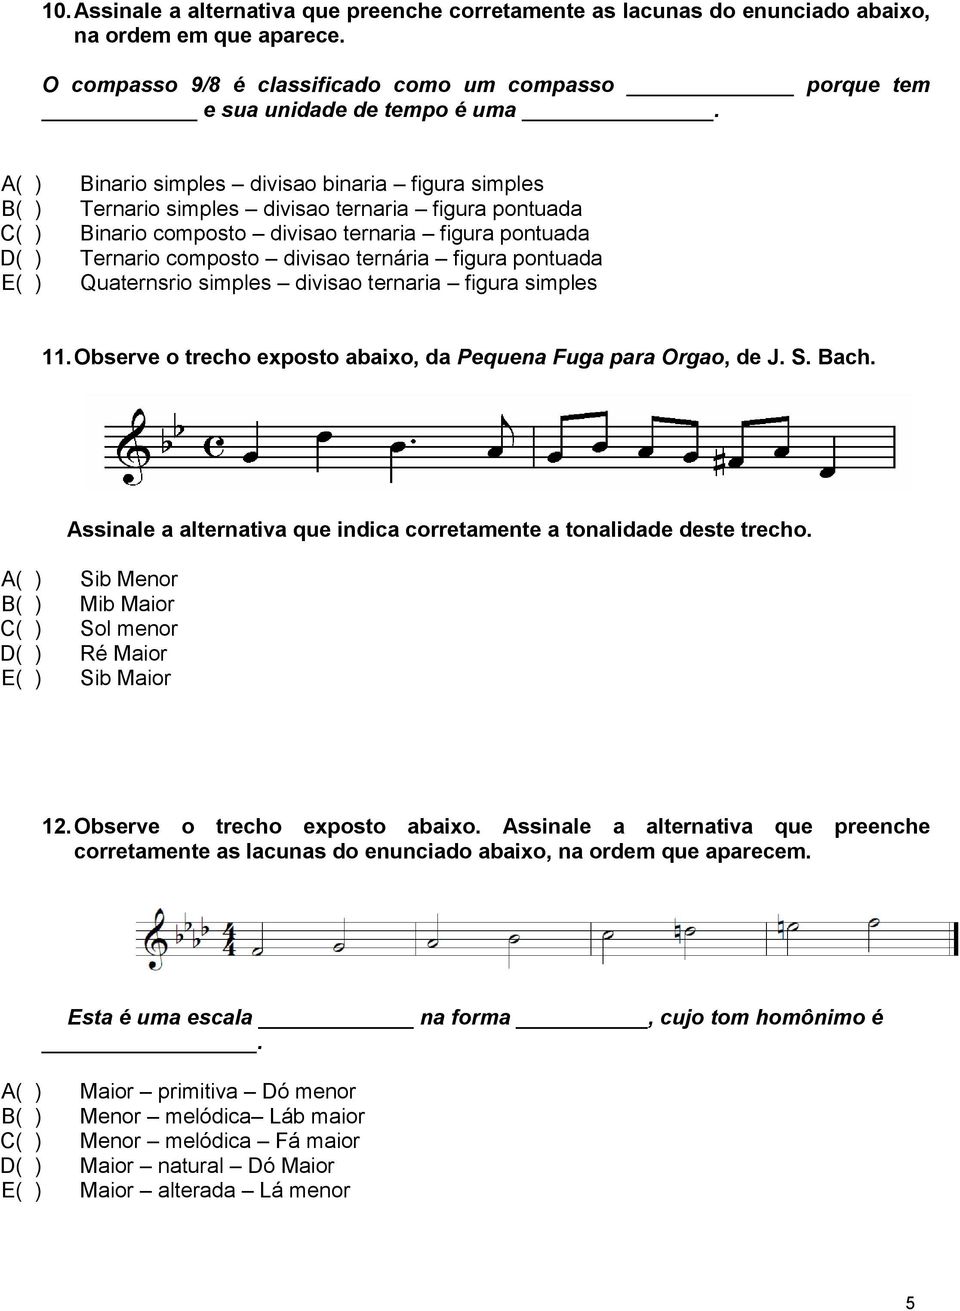 ternária figura pontuada E( ) Quaternsrio simples divisao ternaria figura simples 11. Observe o trecho exposto abaixo, da Pequena Fuga para Orgao, de J. S. Bach.